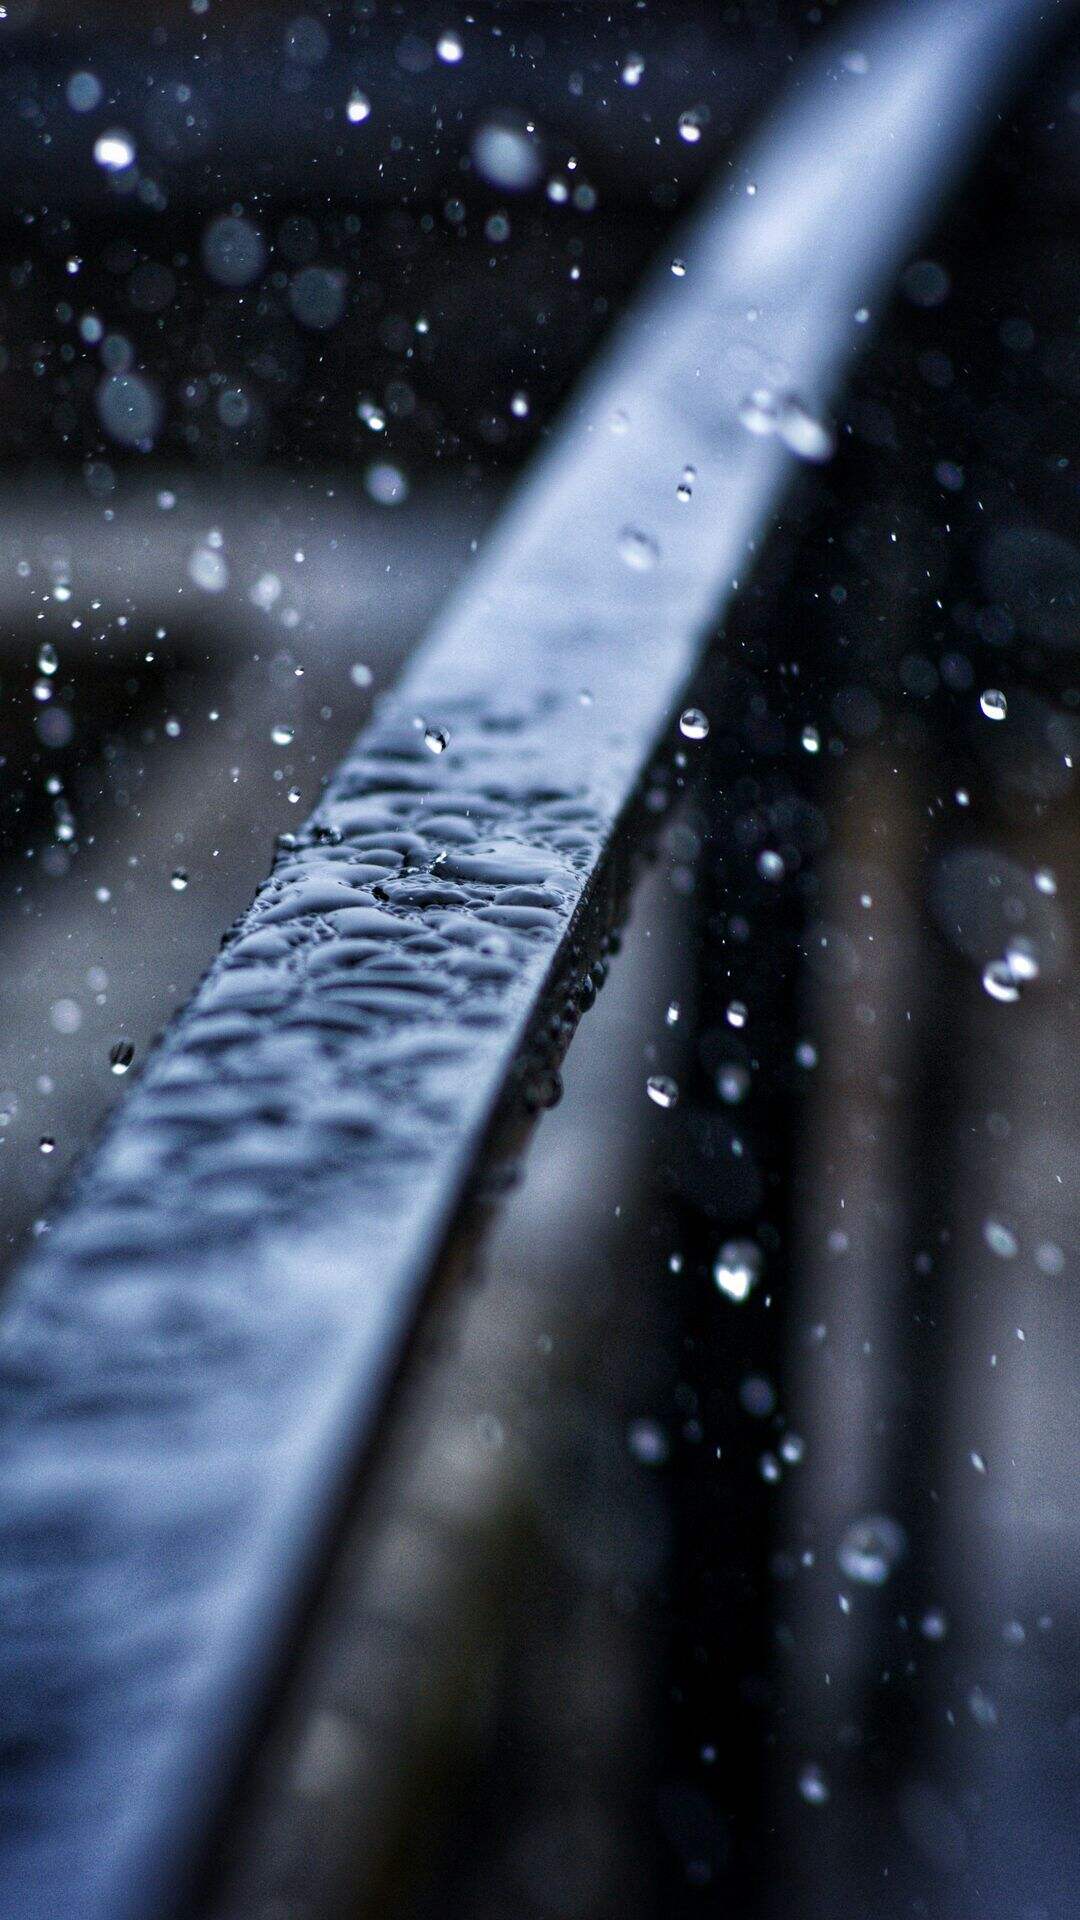 下雨天 雨水 铁栏杆 滴答的雨滴唯美手机壁纸图片